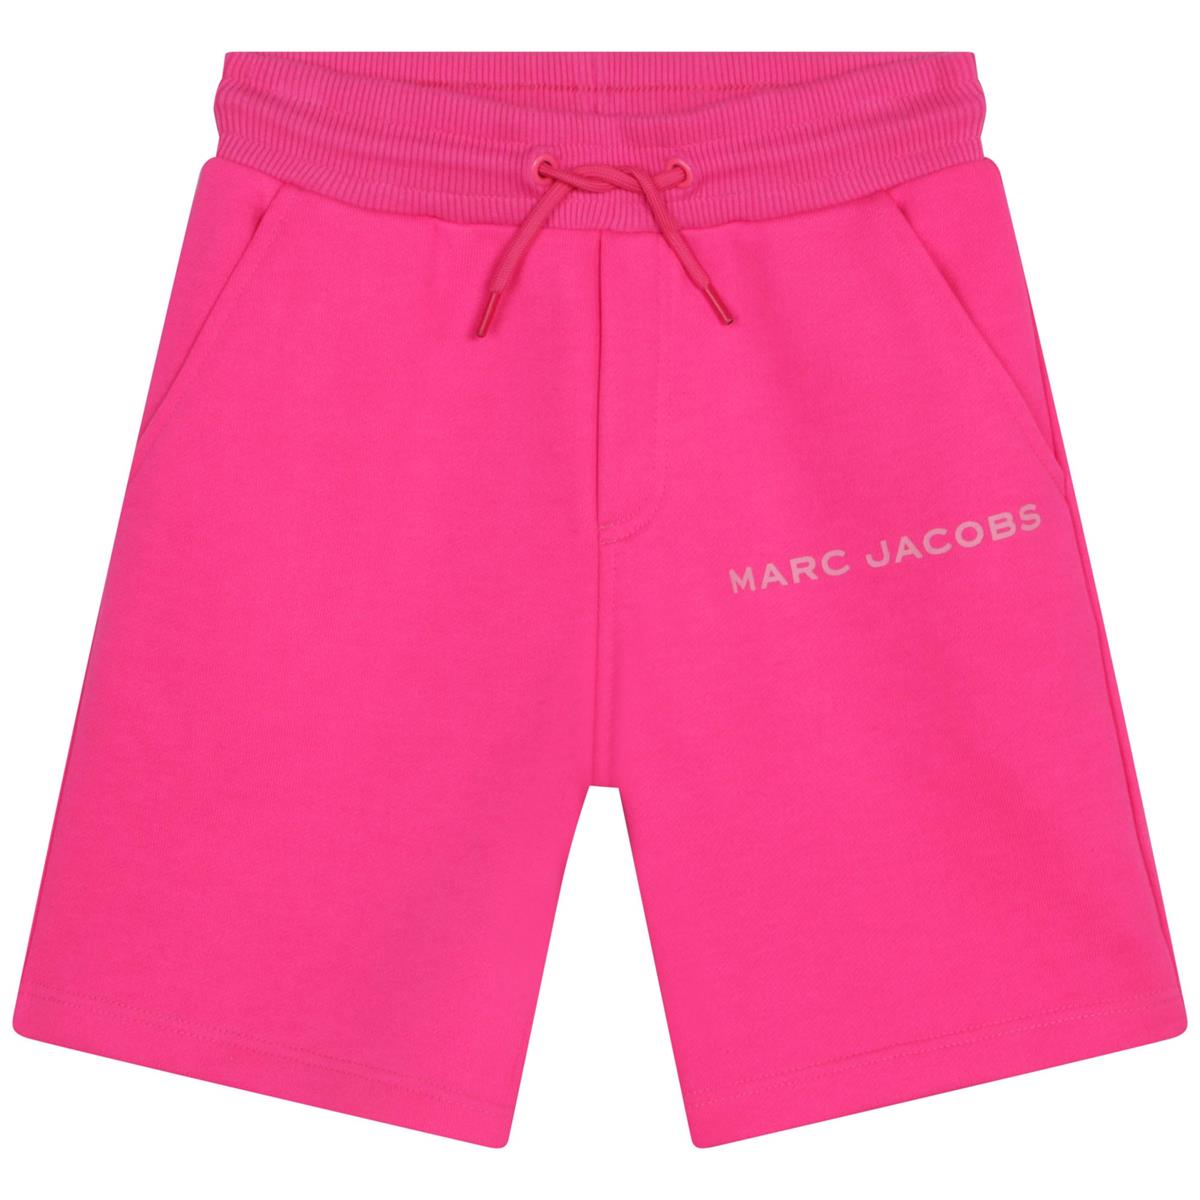 Boys Pink Shorts